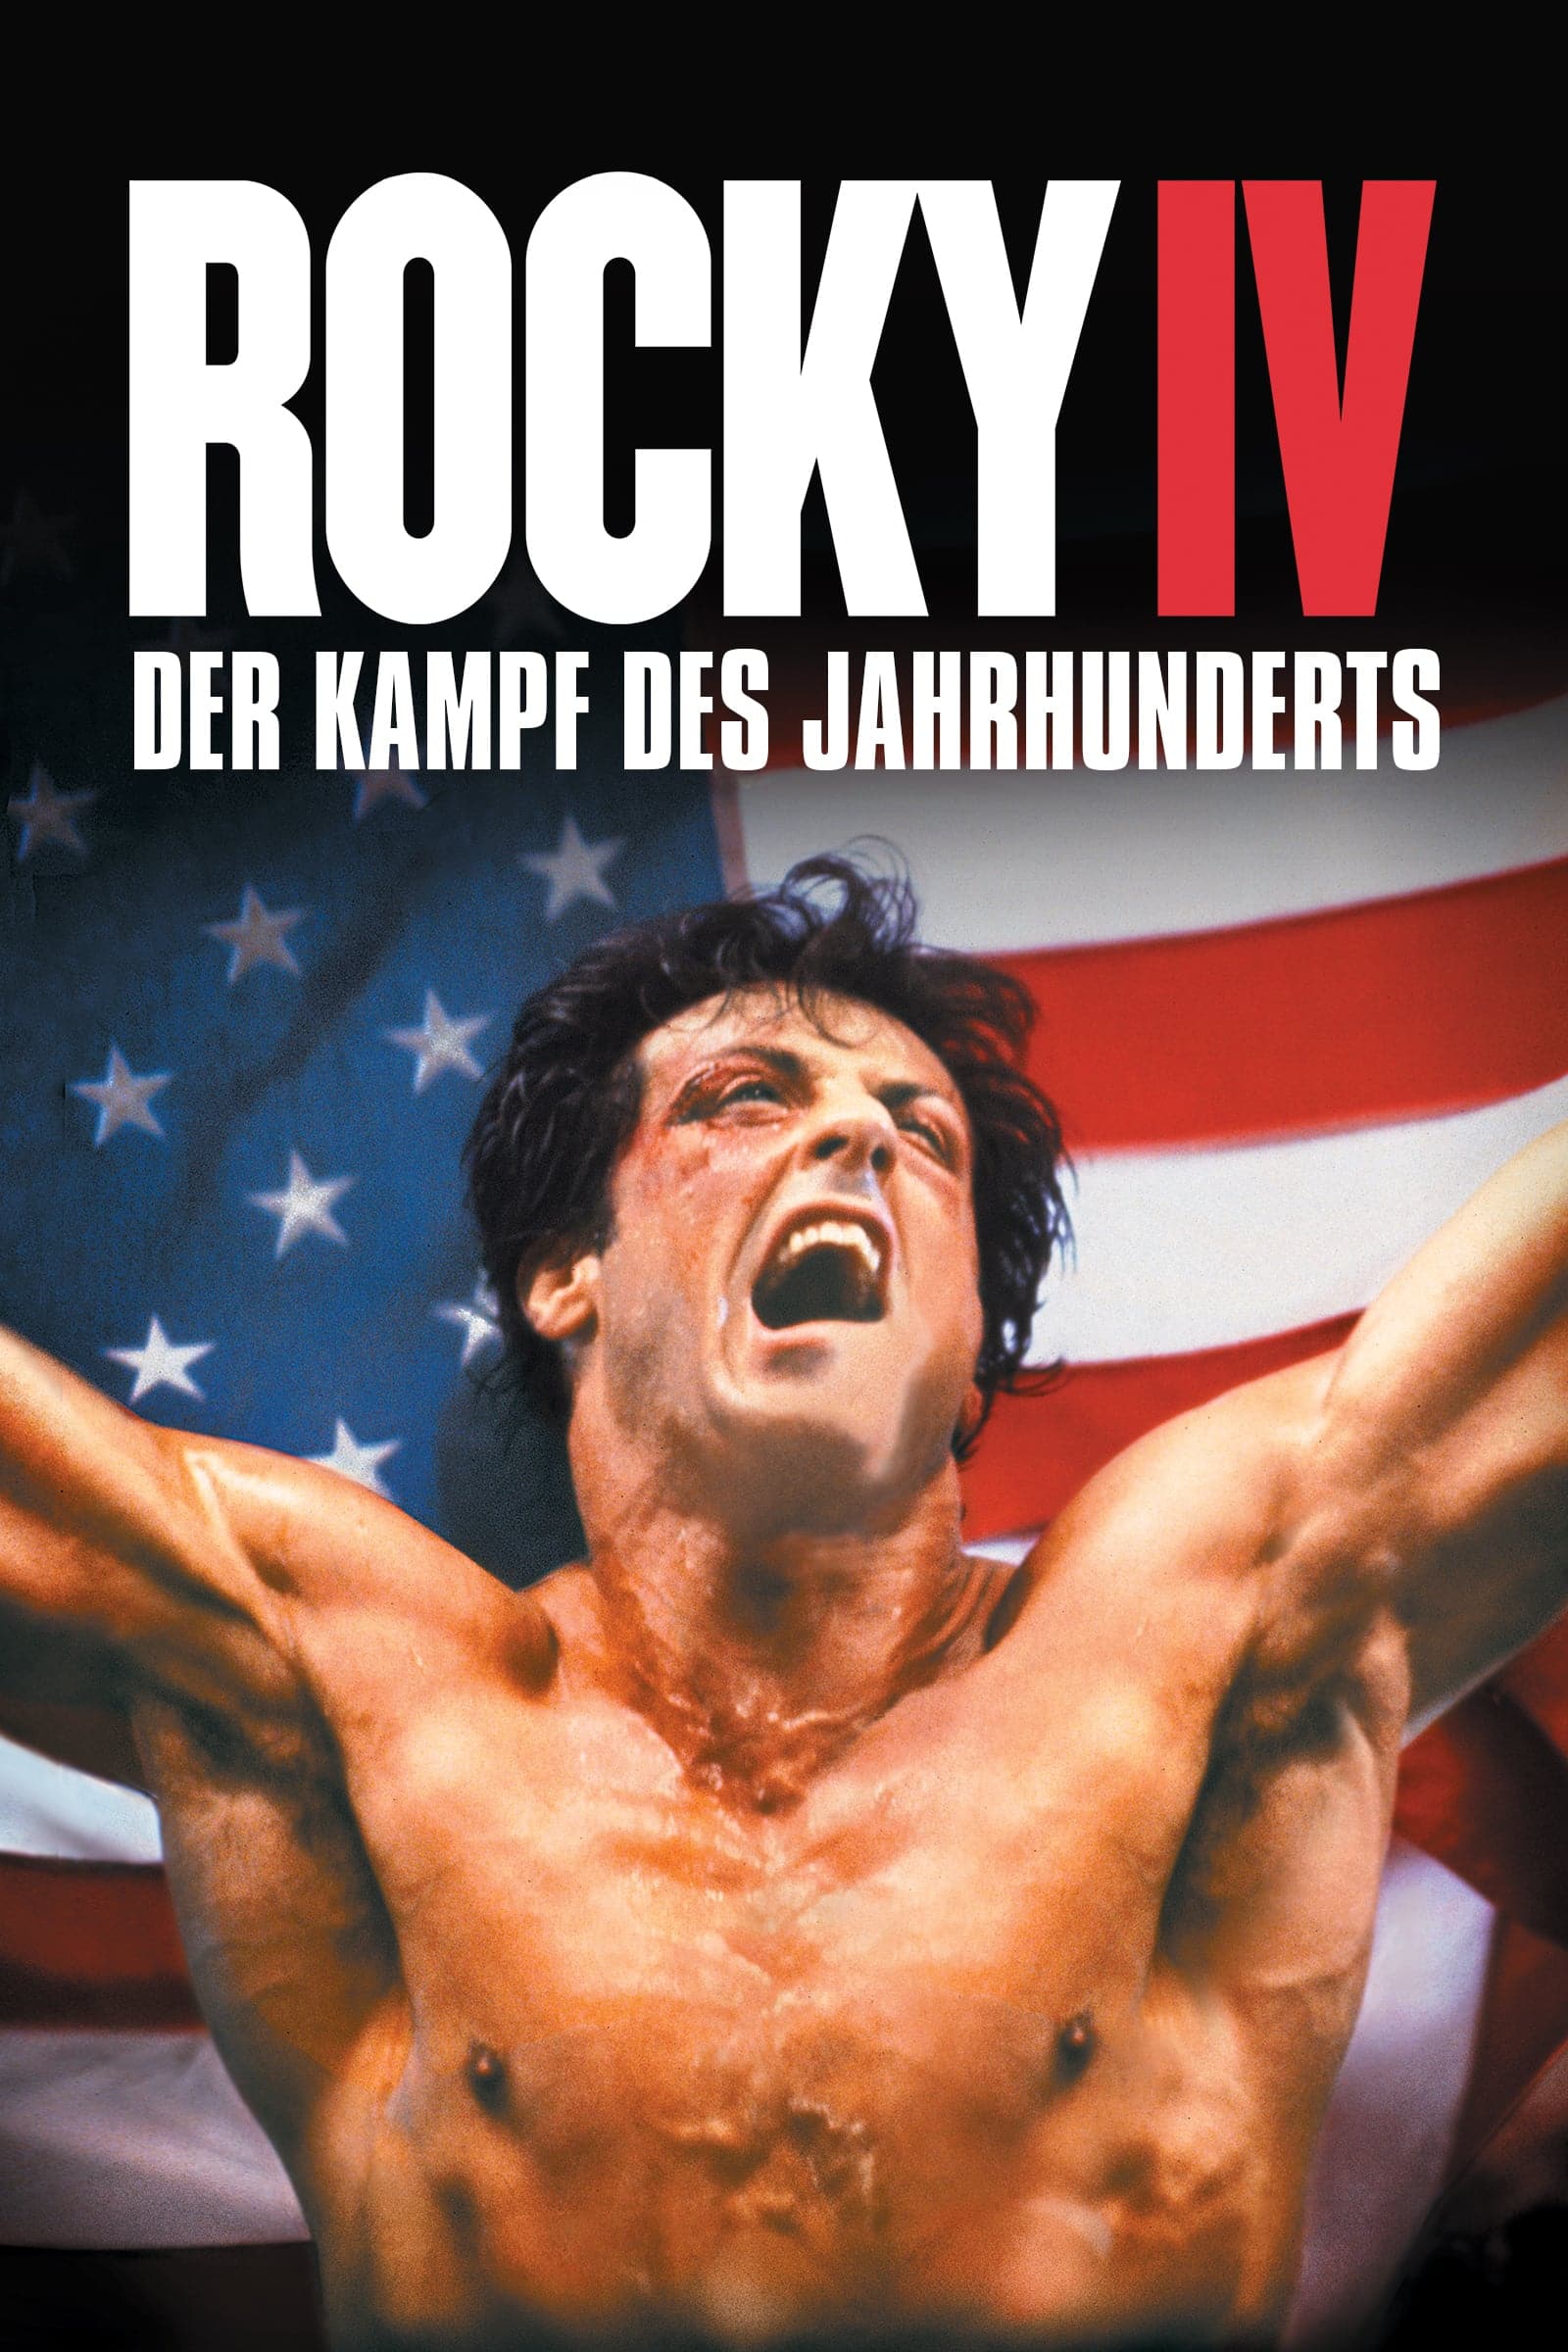 Plakat von "Rocky IV - Der Kampf des Jahrhunderts"